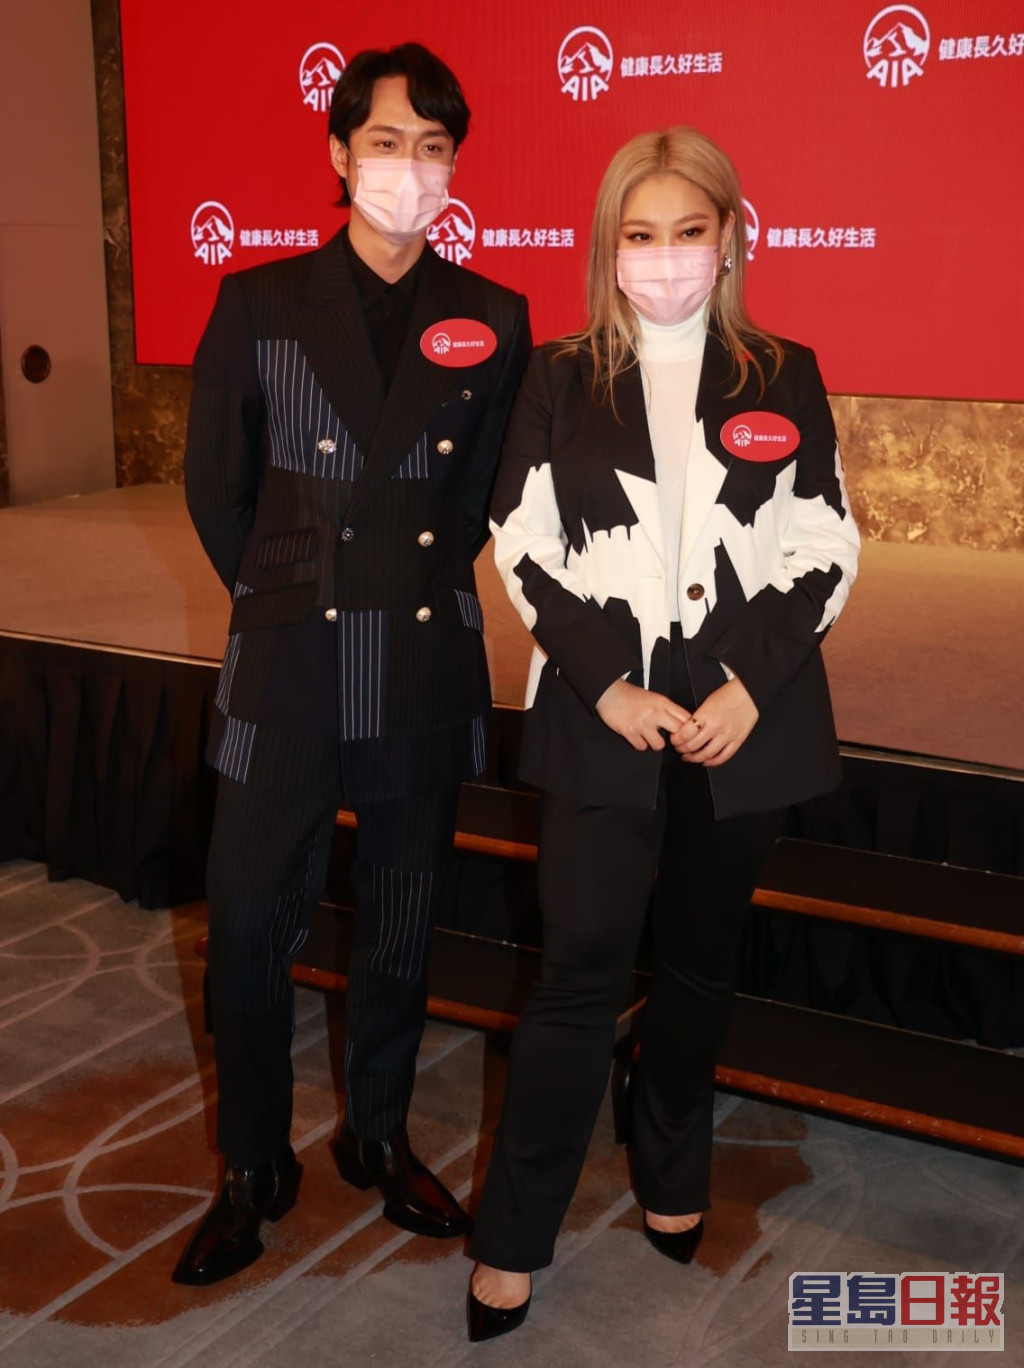 欣宜与刘俊谦出席为保险公司拍广告的宣传活动。